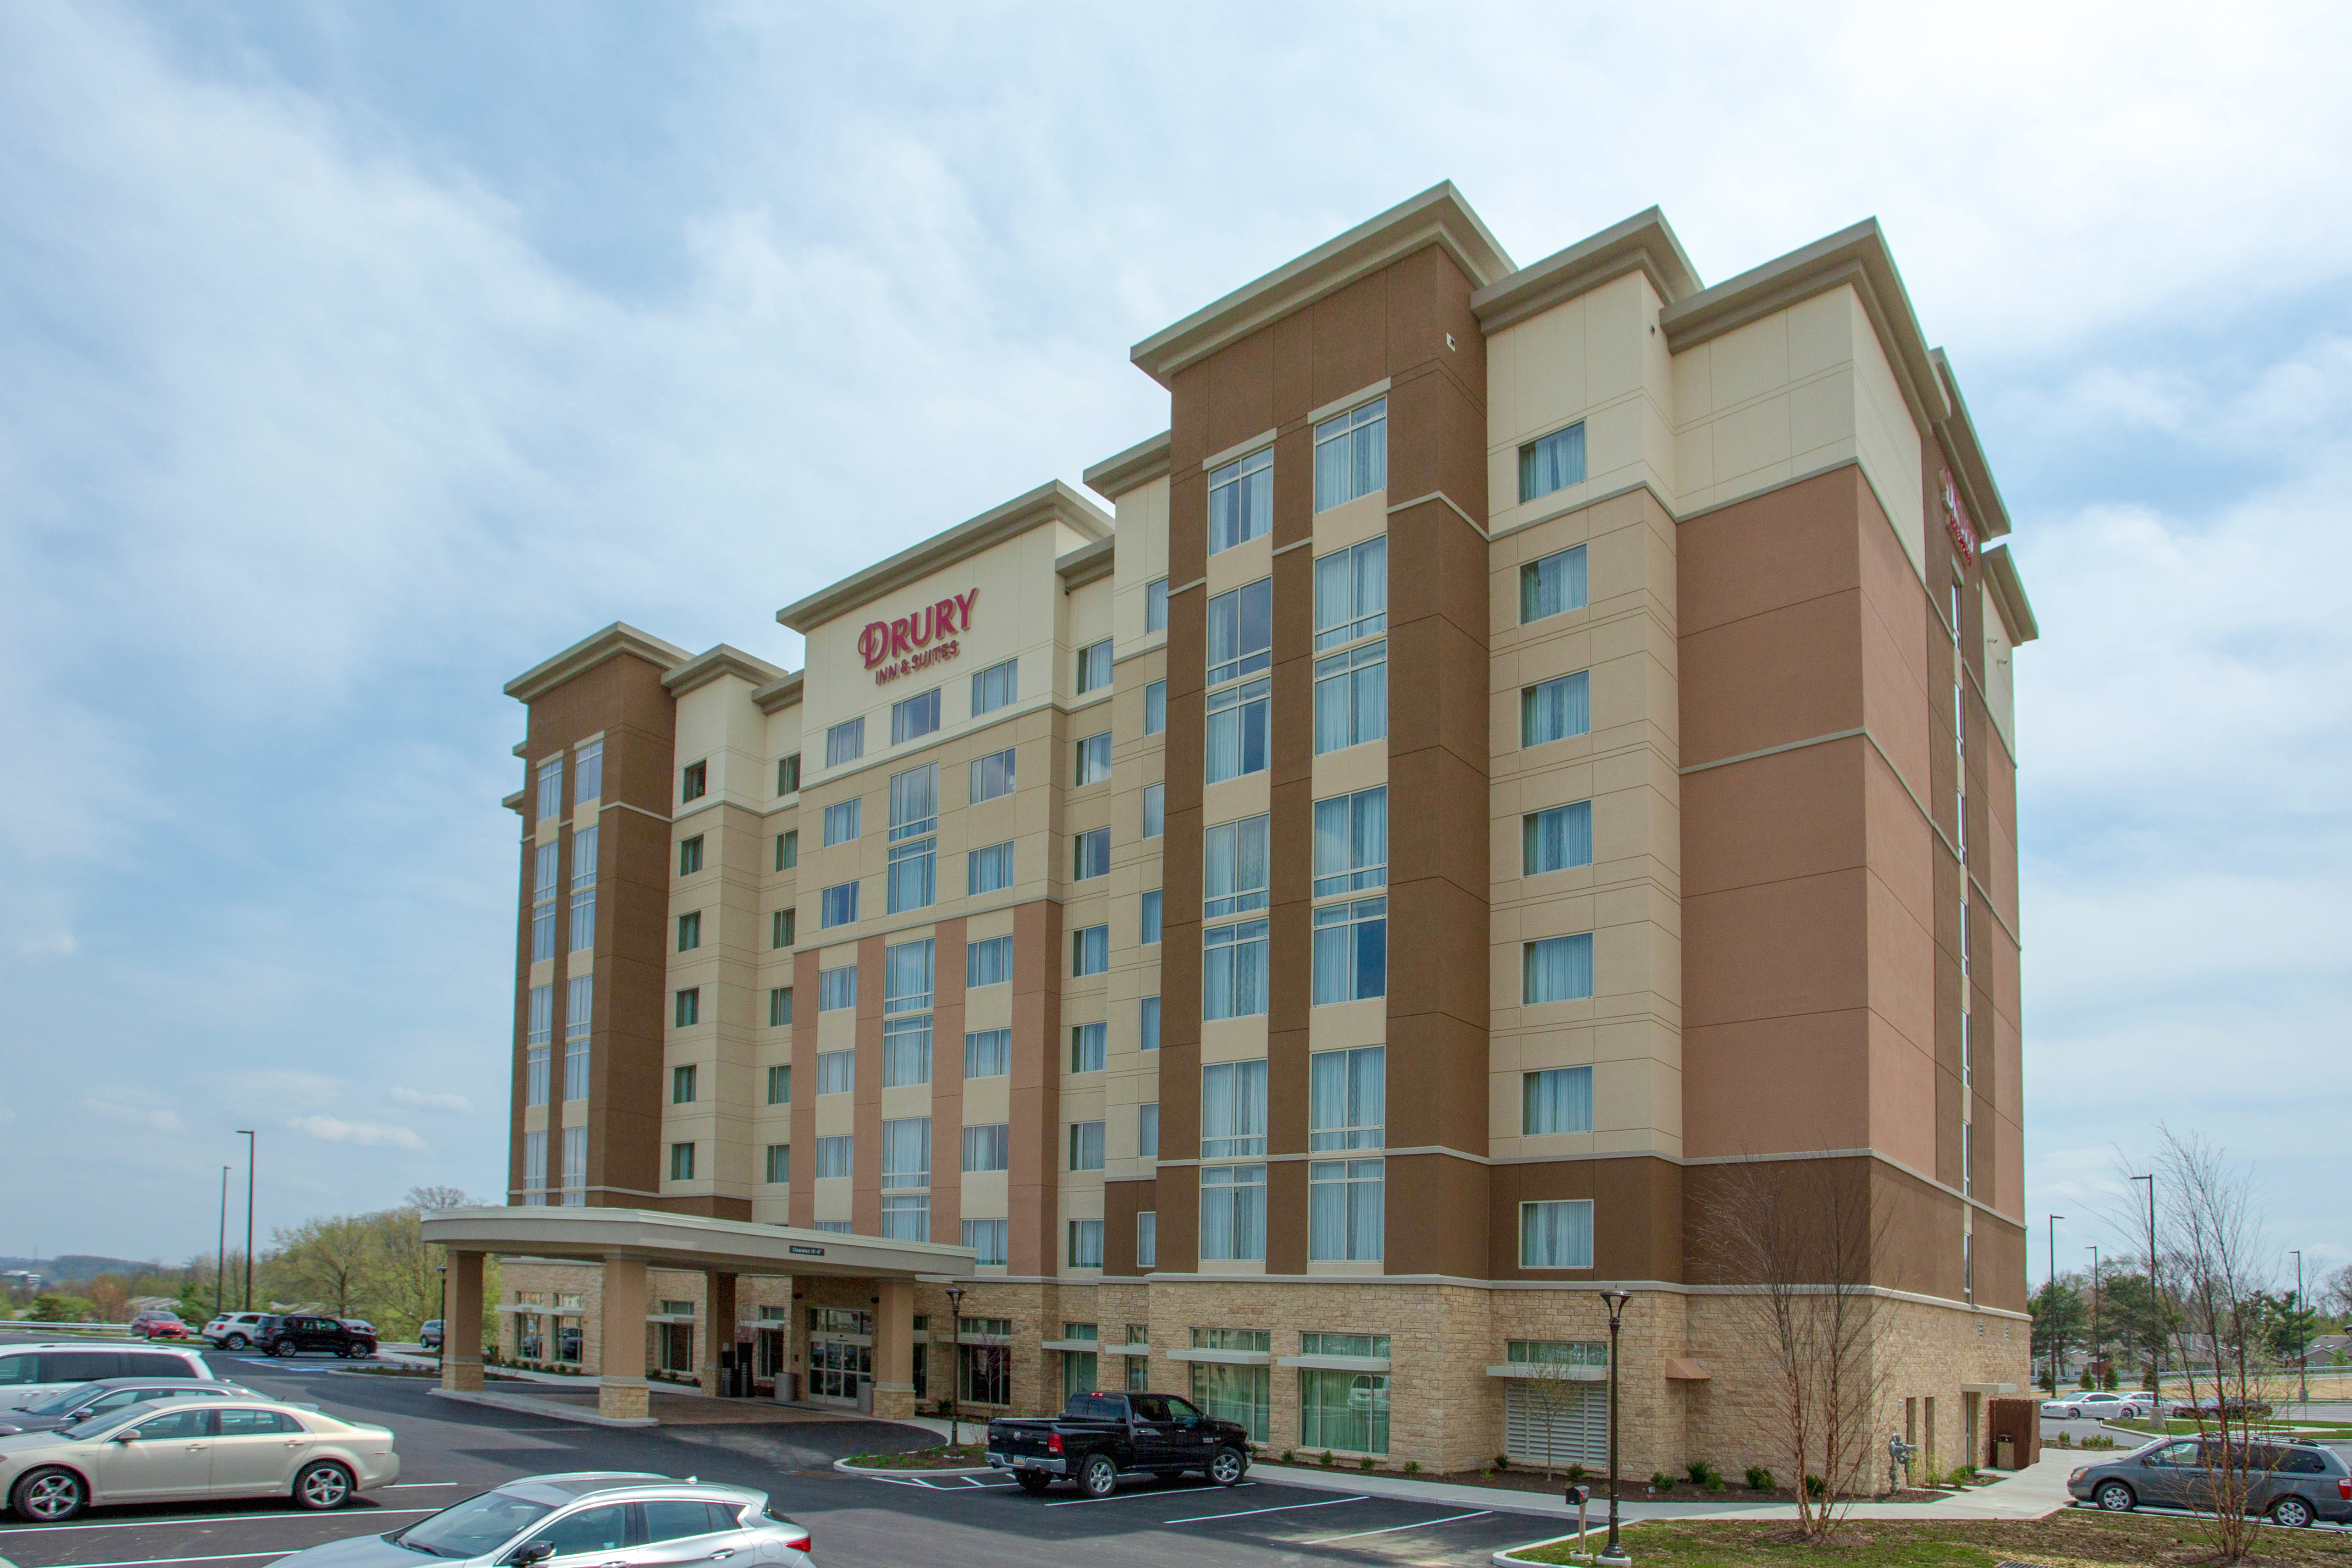 Drury Inn Suites Pittsburgh Airport Settlers Ridge Drury Hotels